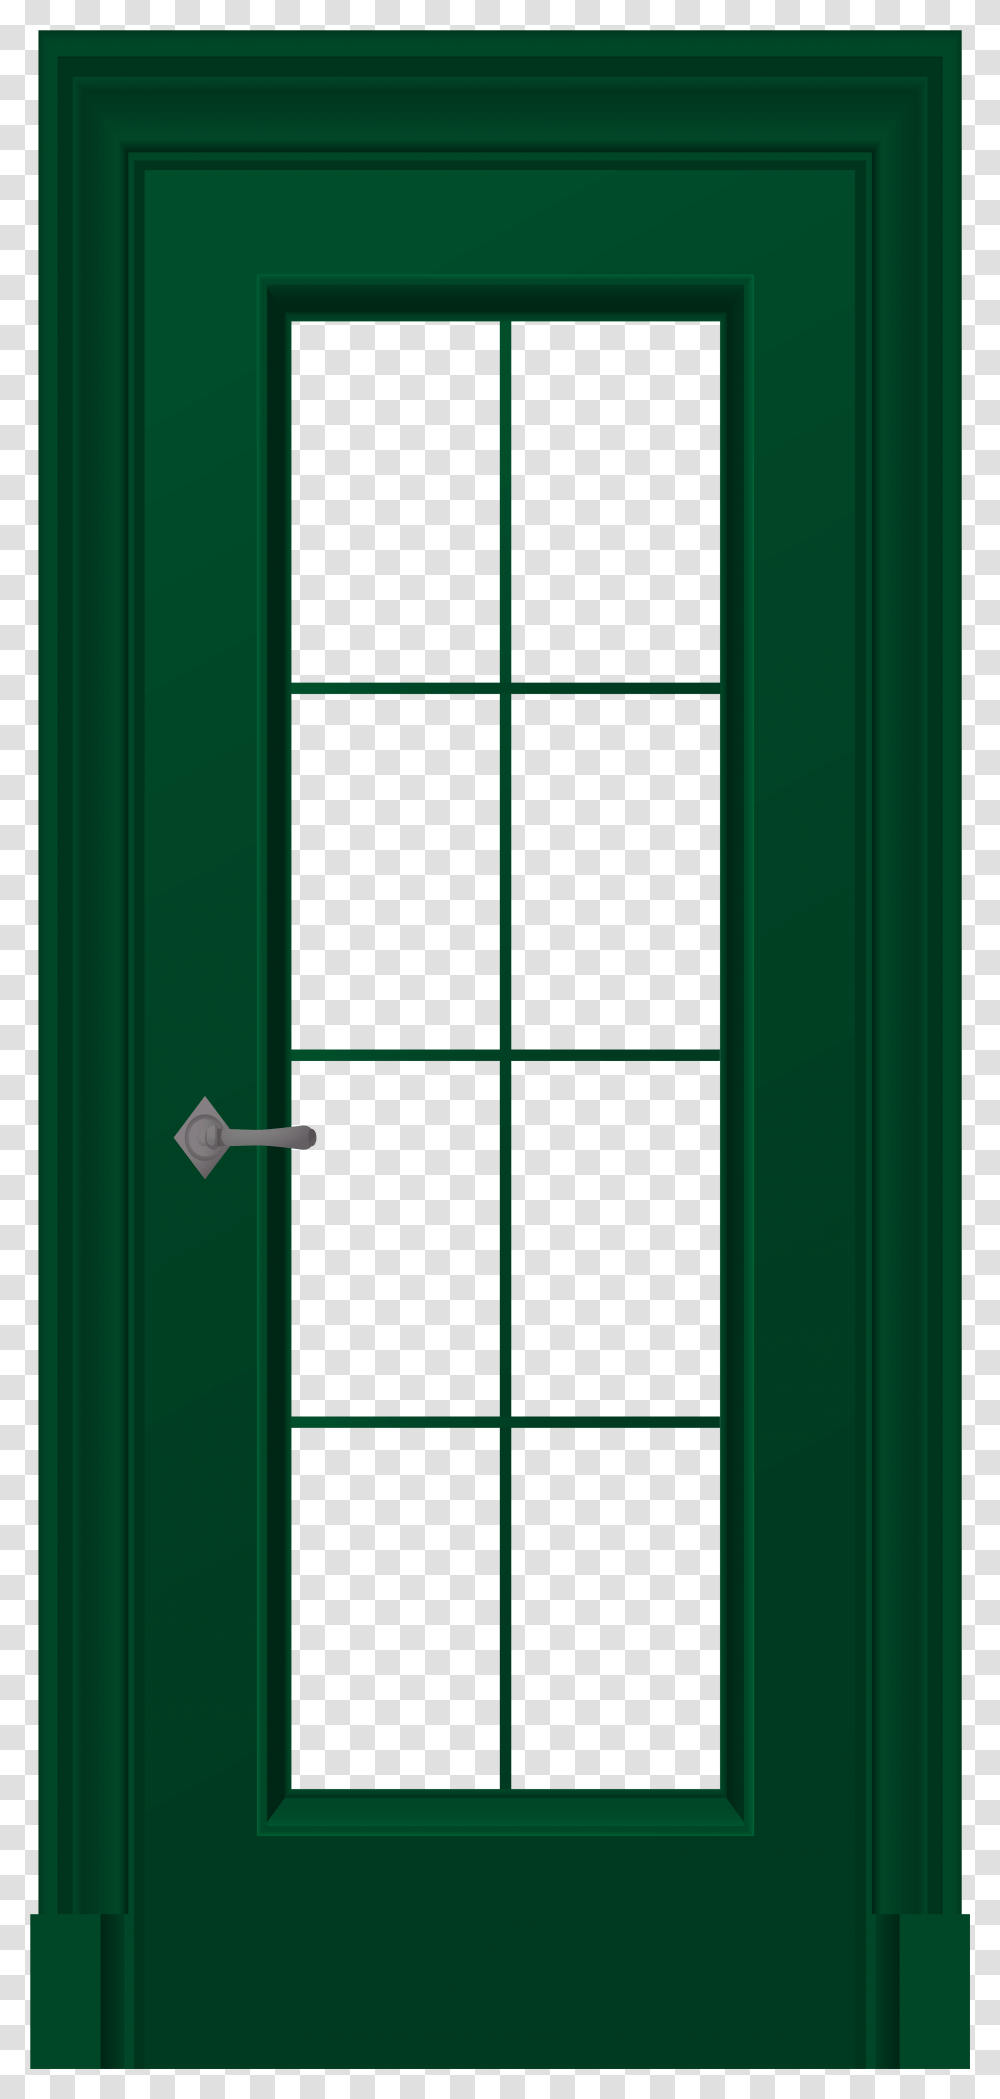 Green Door Clip Art Green Door, Lighting, Window, Picture Window, Silhouette Transparent Png